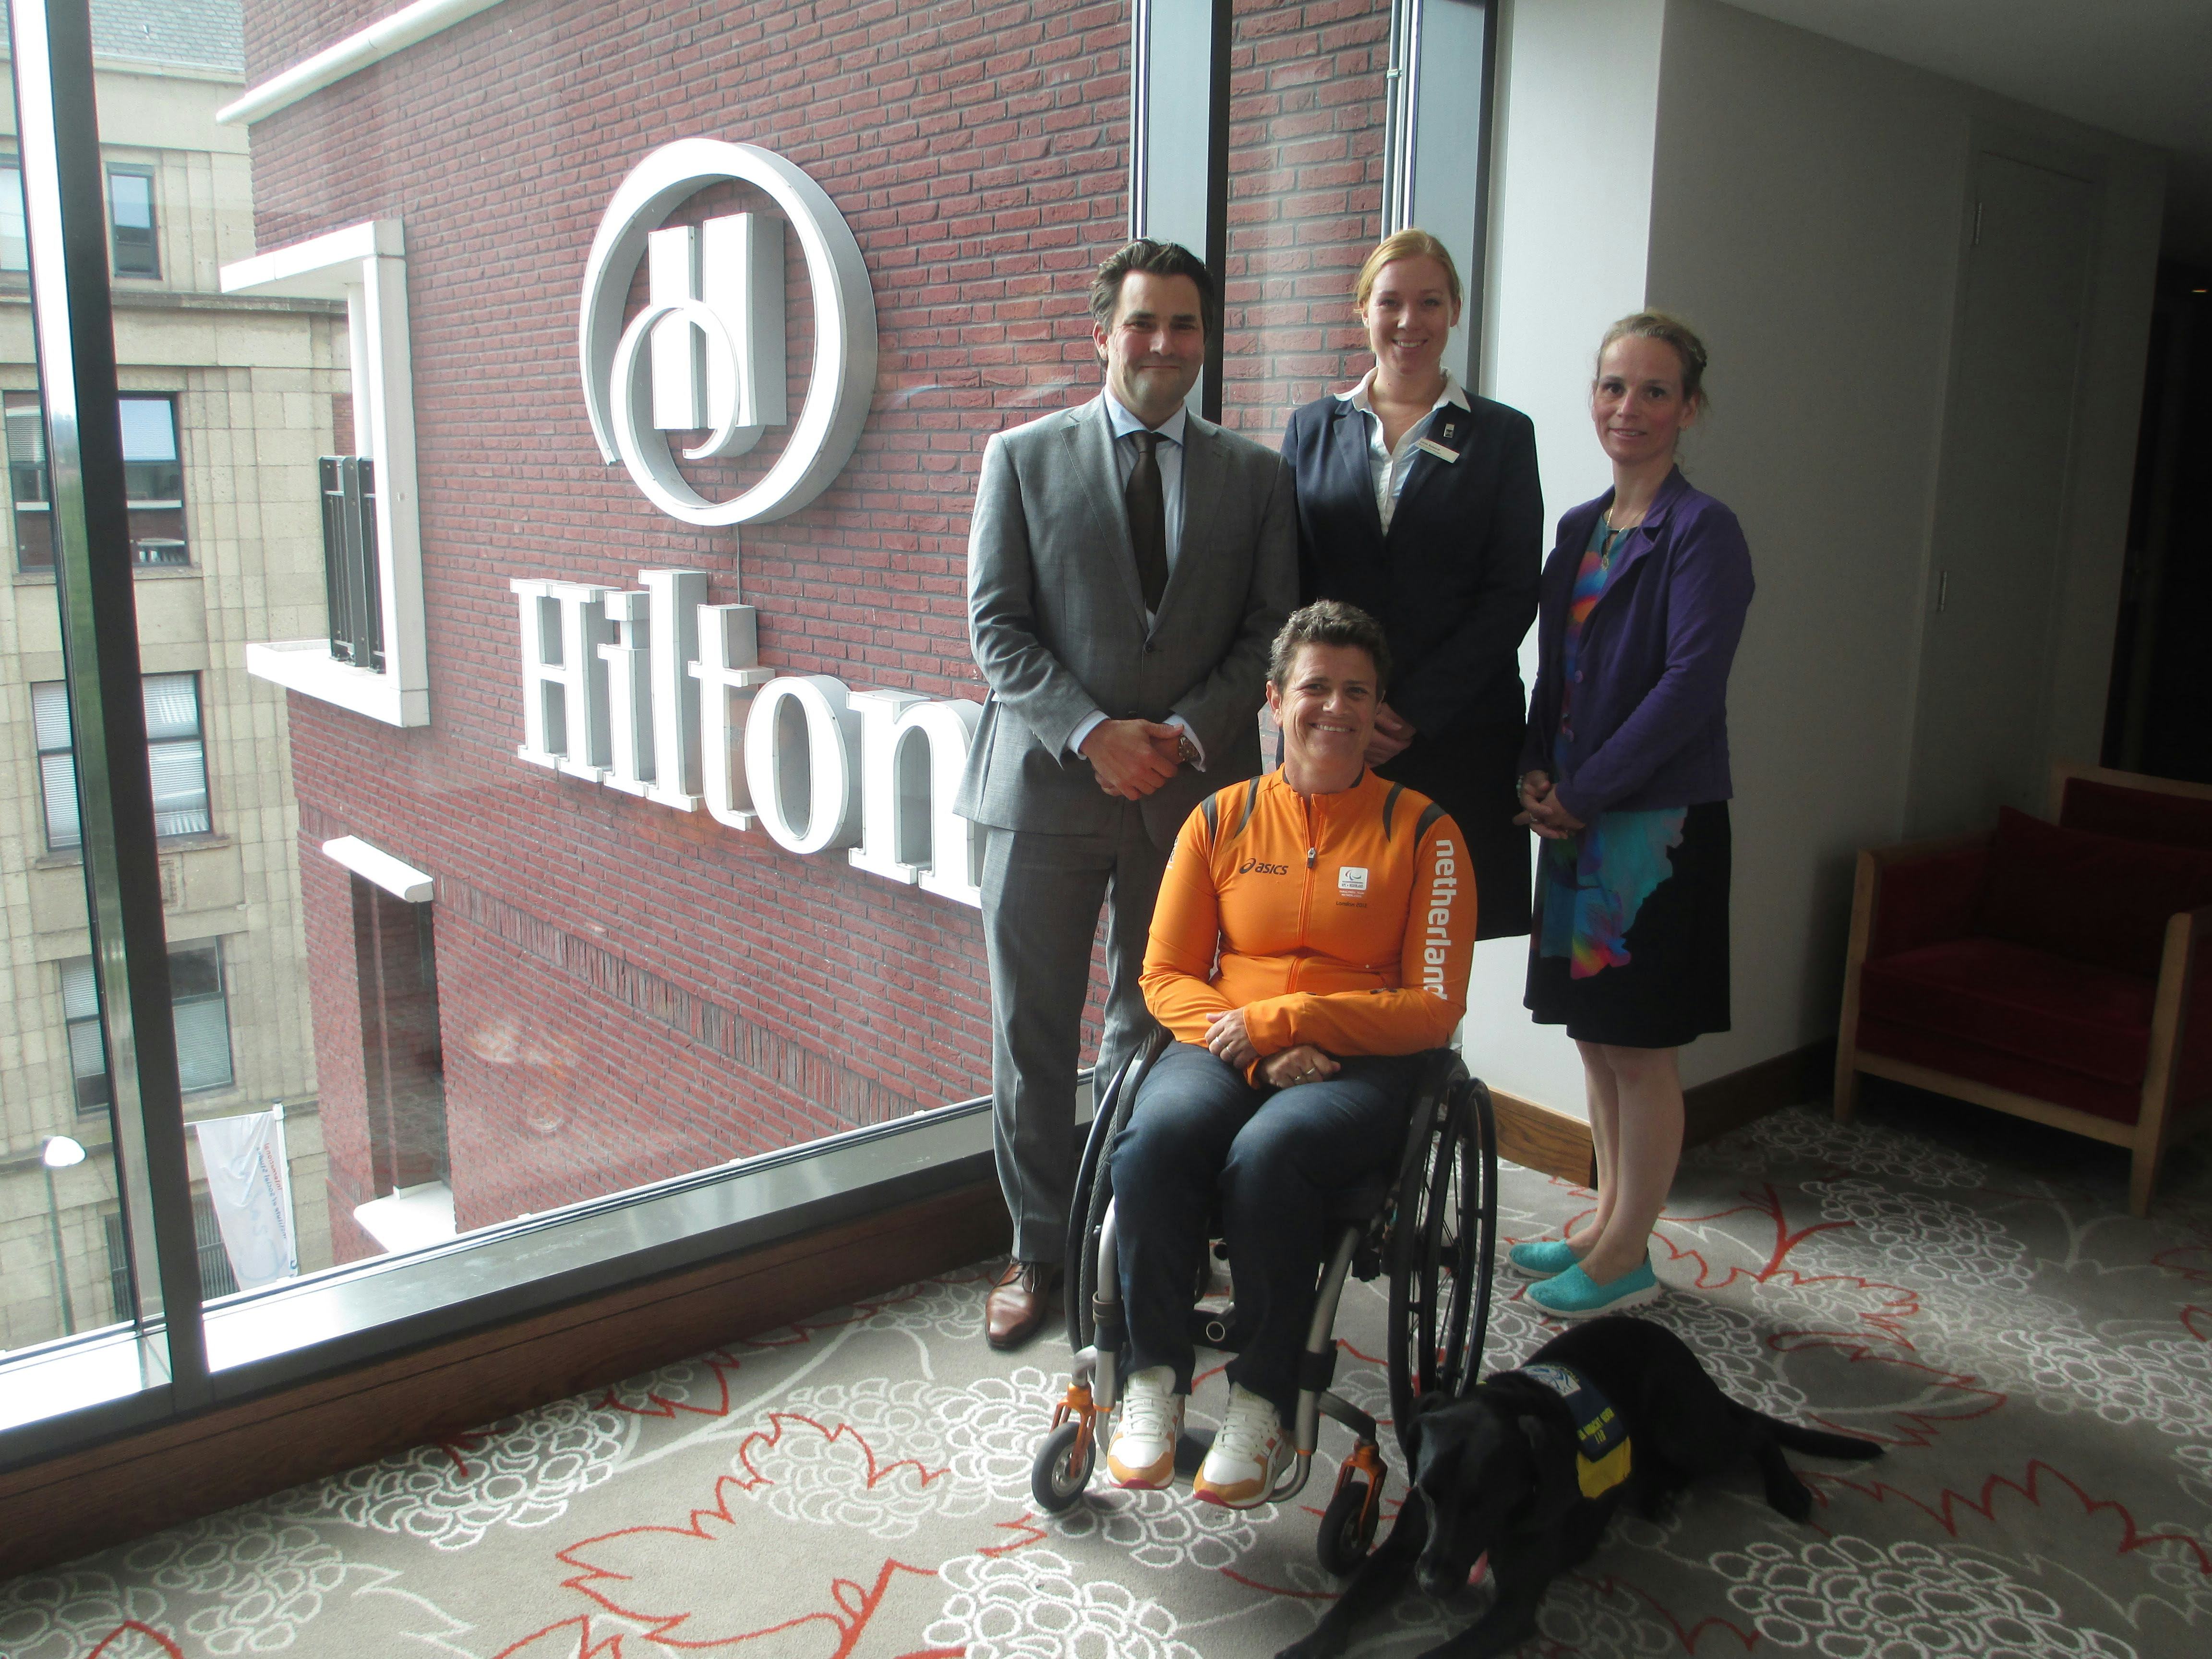 Hilton The Hague scoort op toegankelijkheid